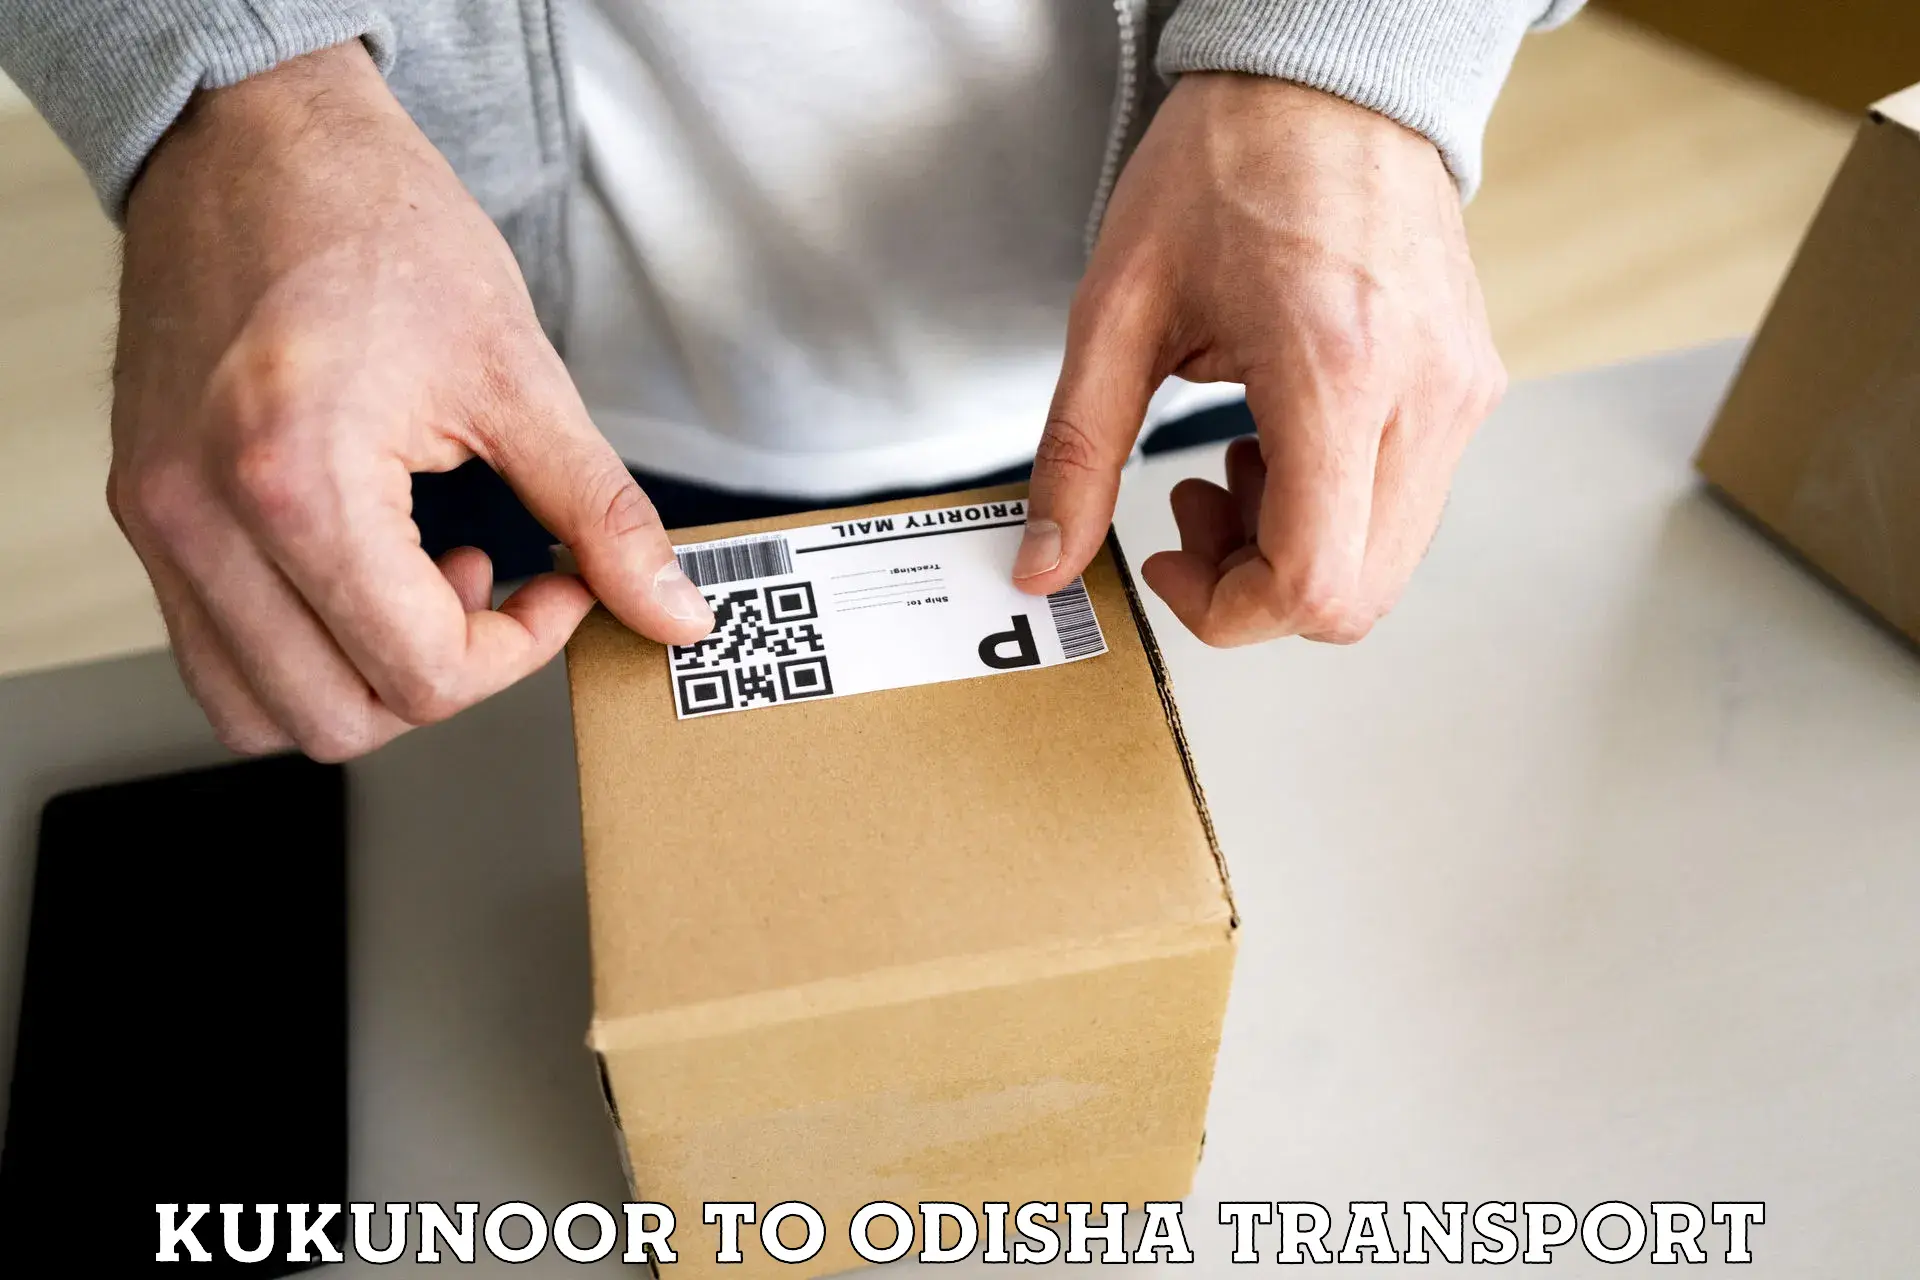 Transport in sharing Kukunoor to Kantabanji